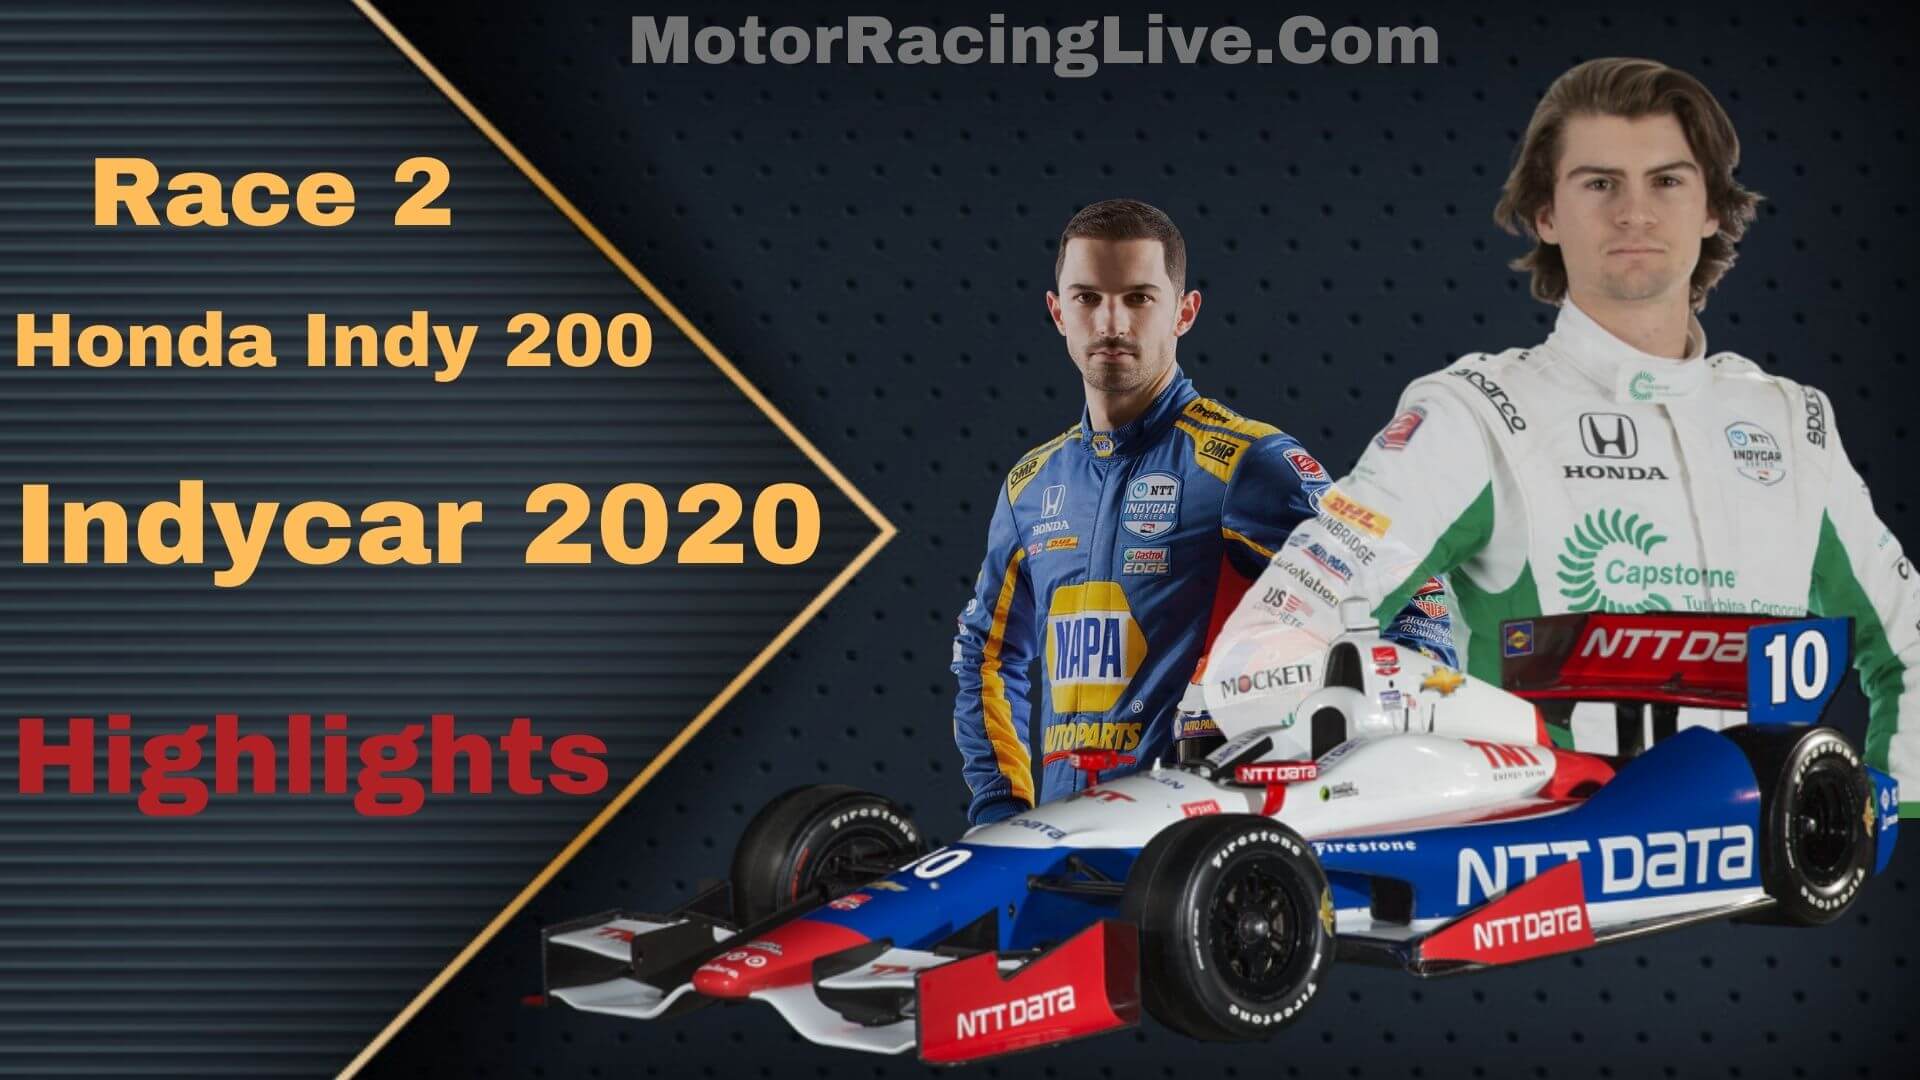 Honda Indy 200 Race 2 Highlights Indycar 2020